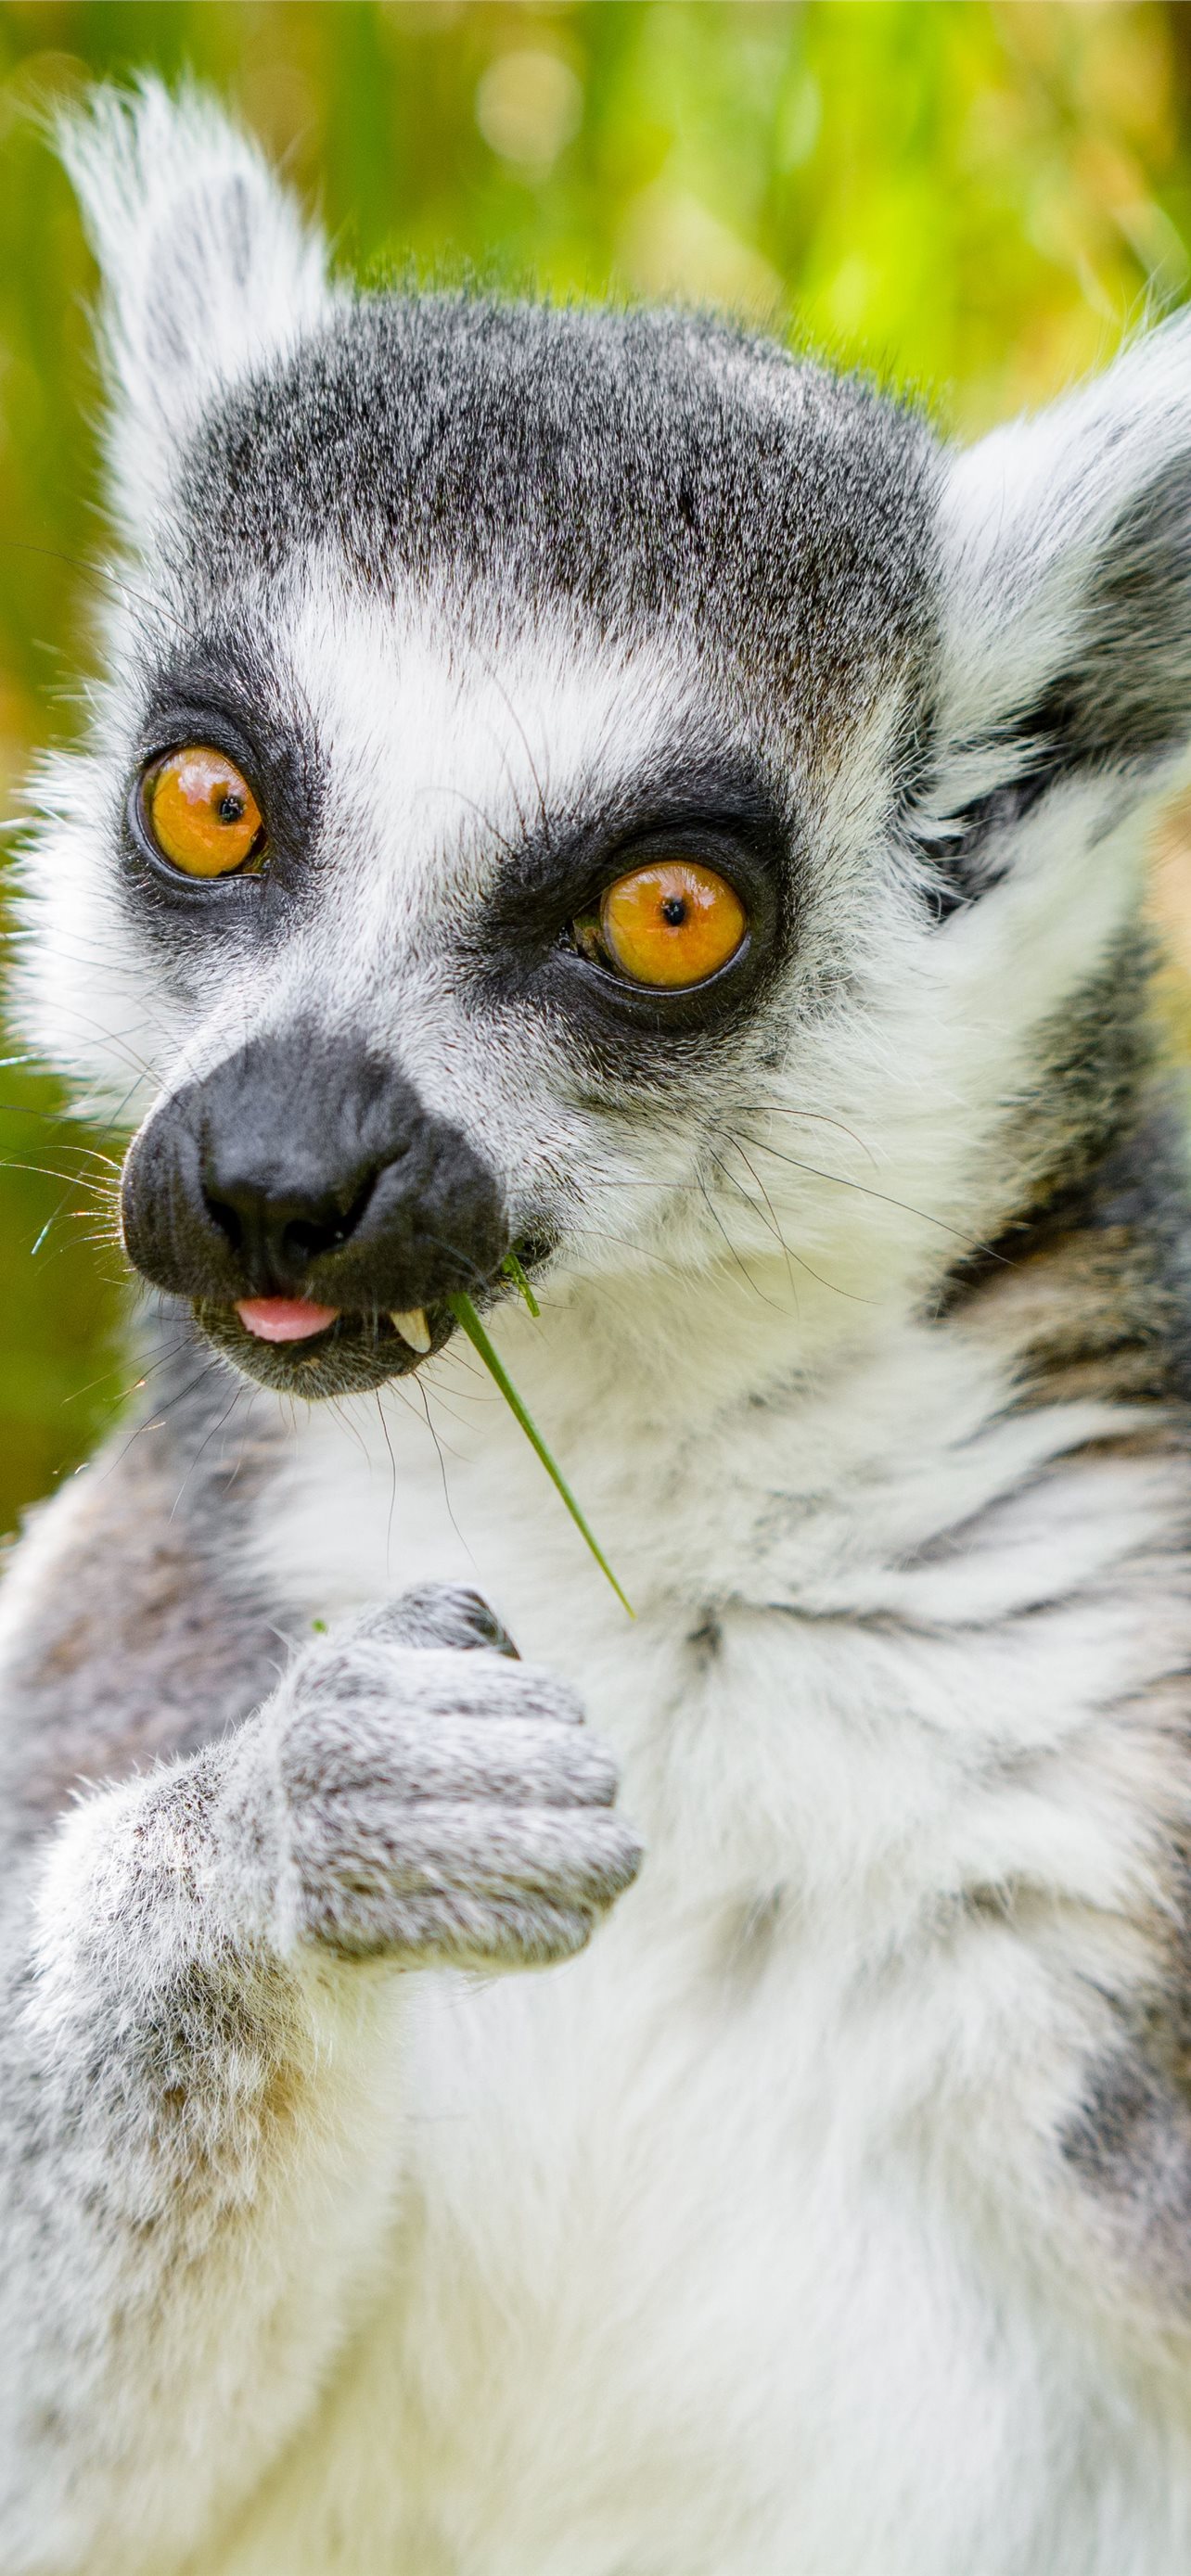 900 Free Lemurs  Madagascar Images  Pixabay